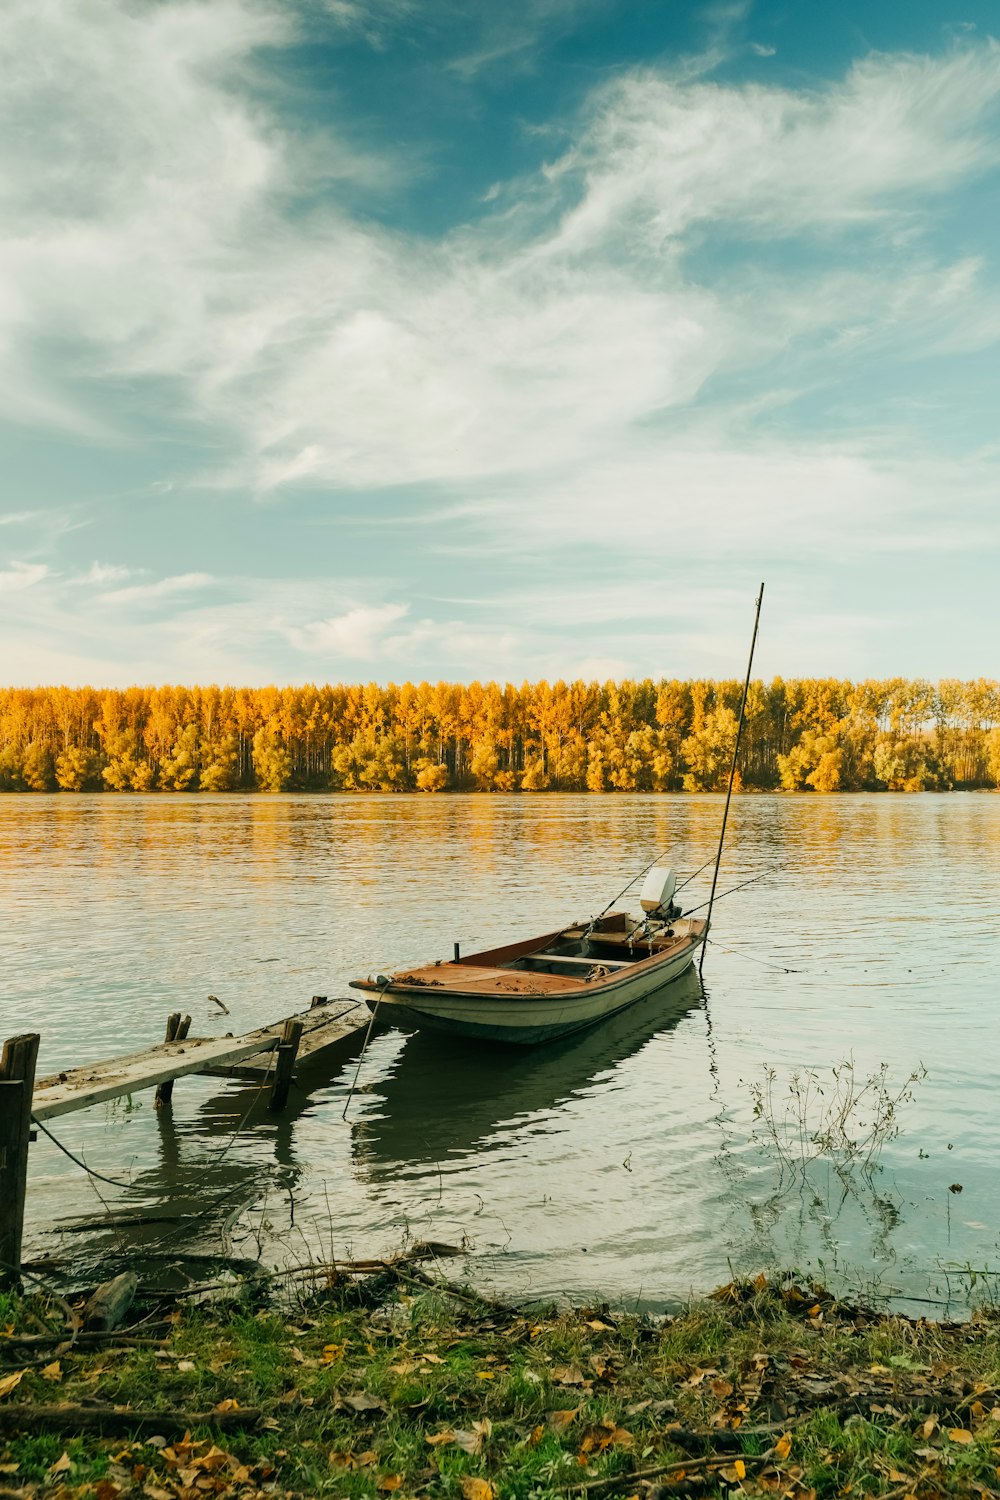 Bote de madera marrón en el lago durante el día